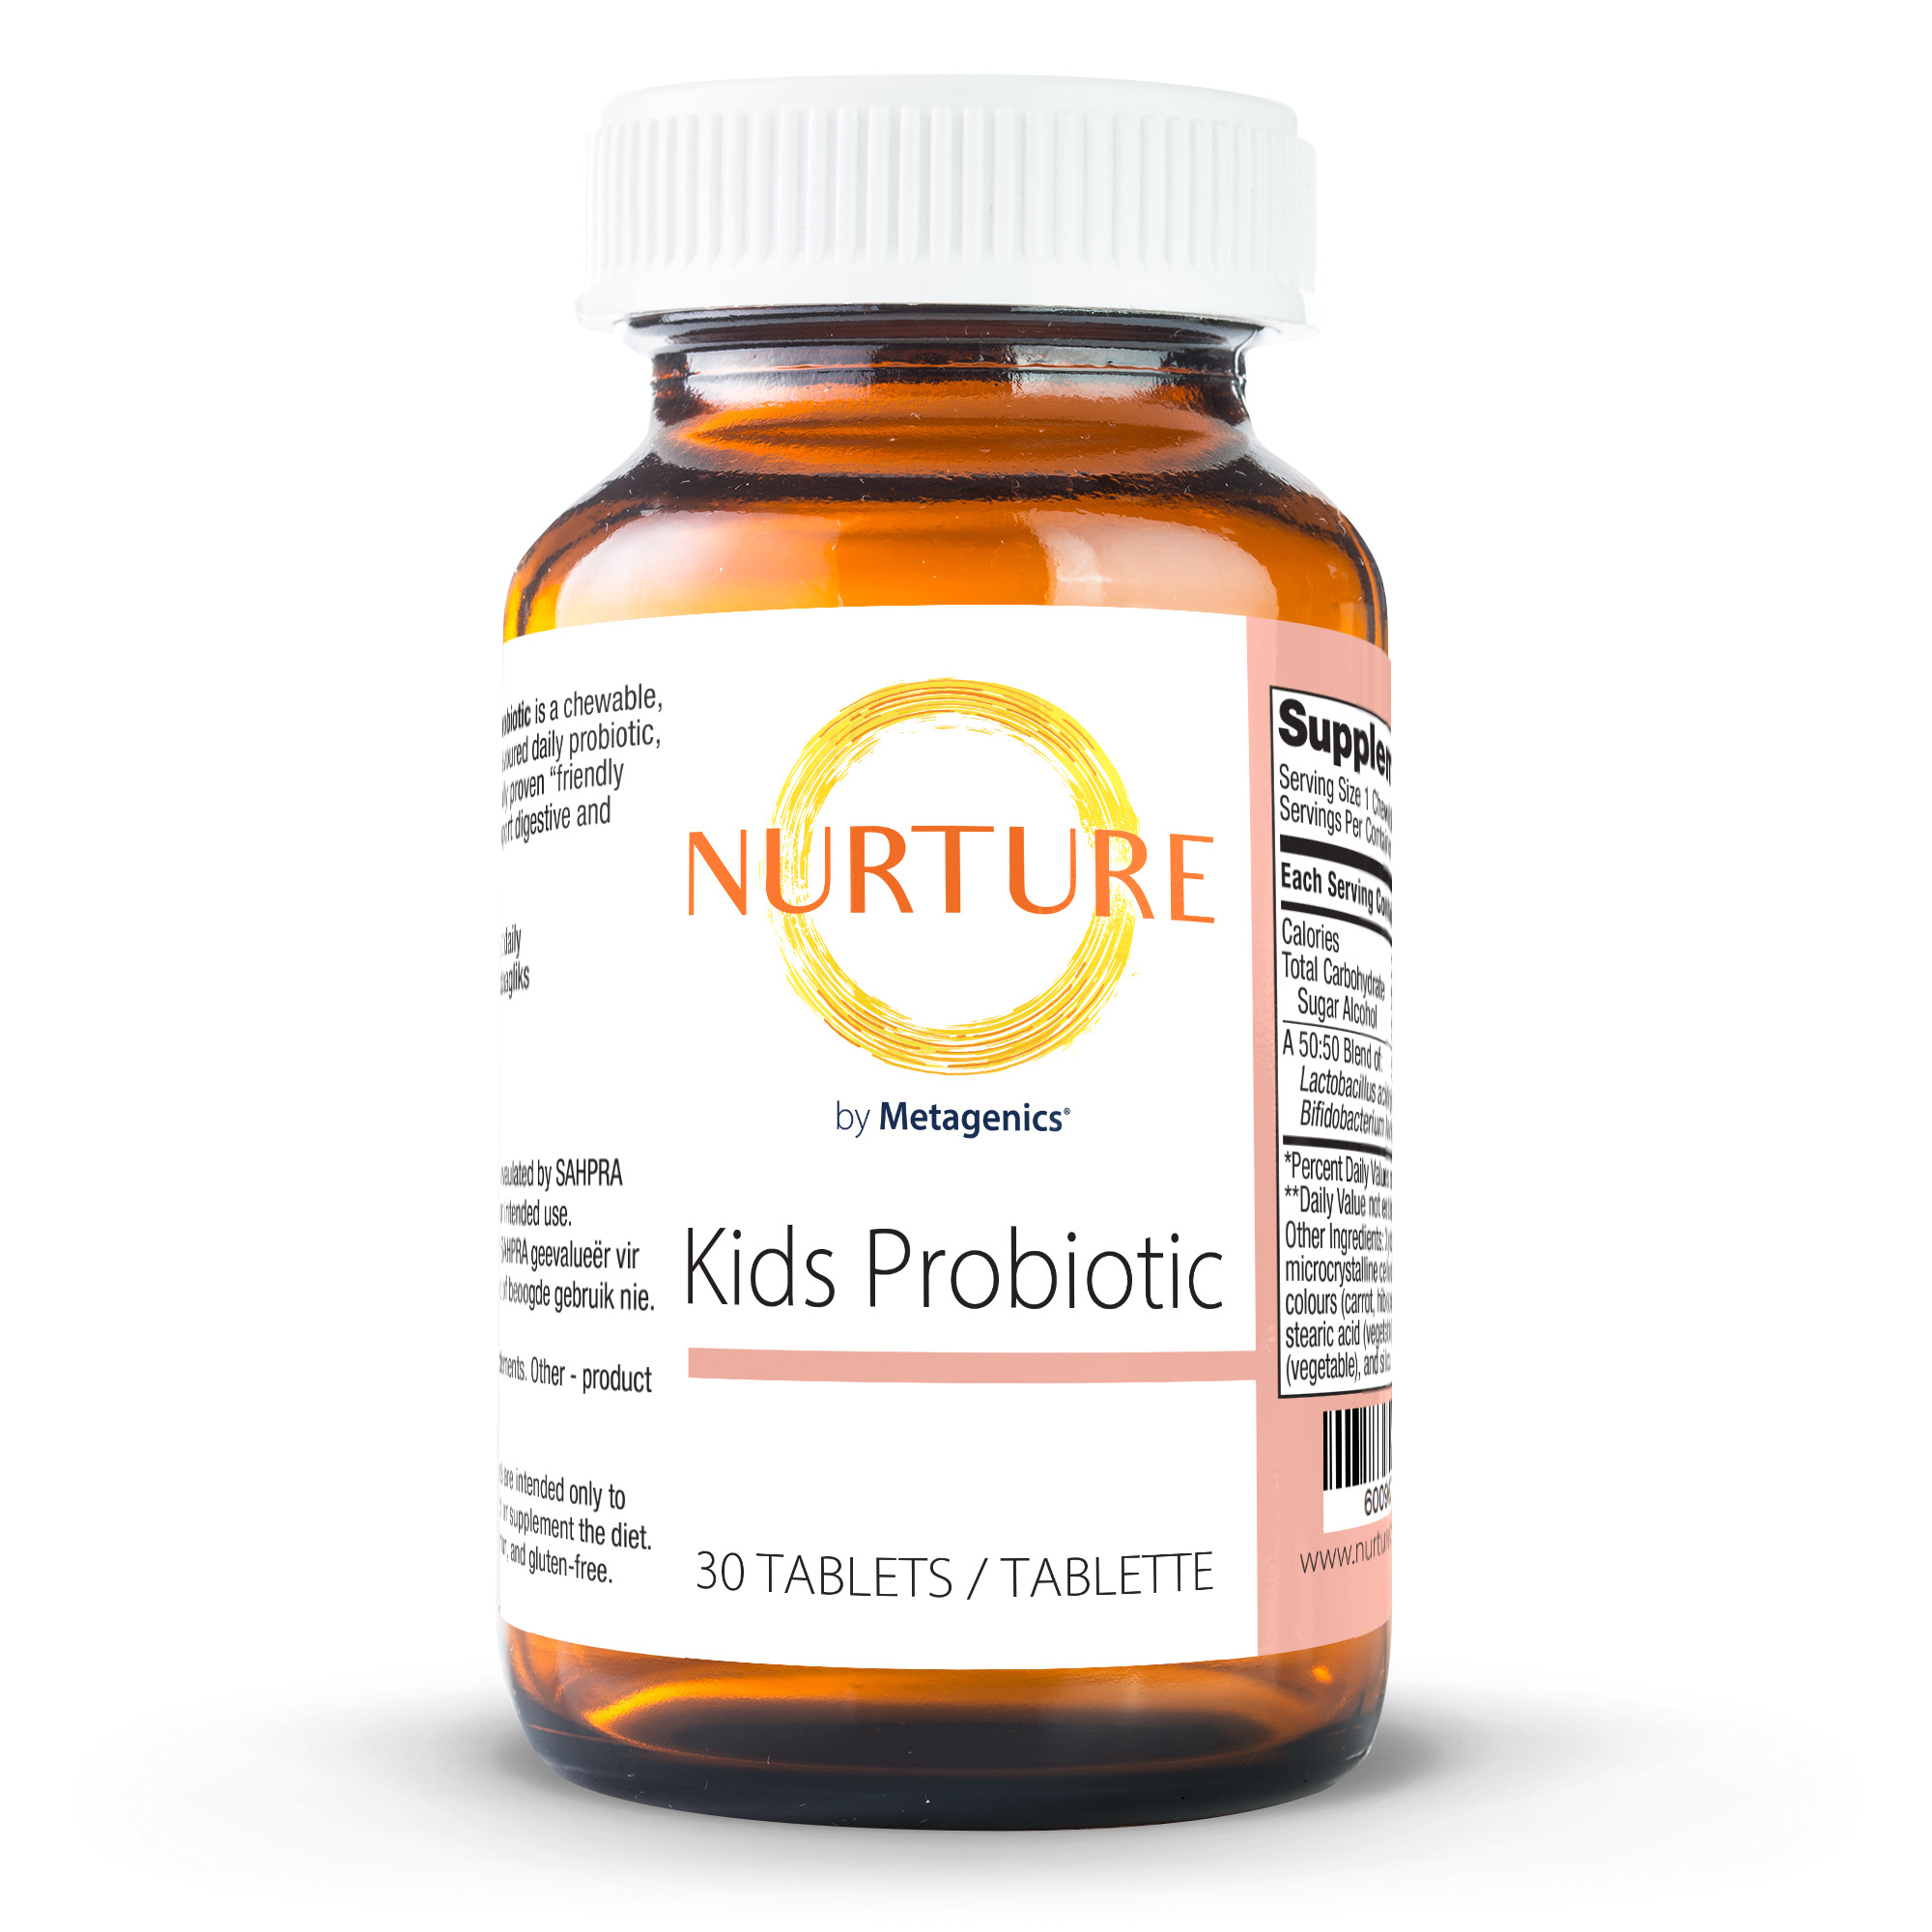 Nurture Kids Probiotic